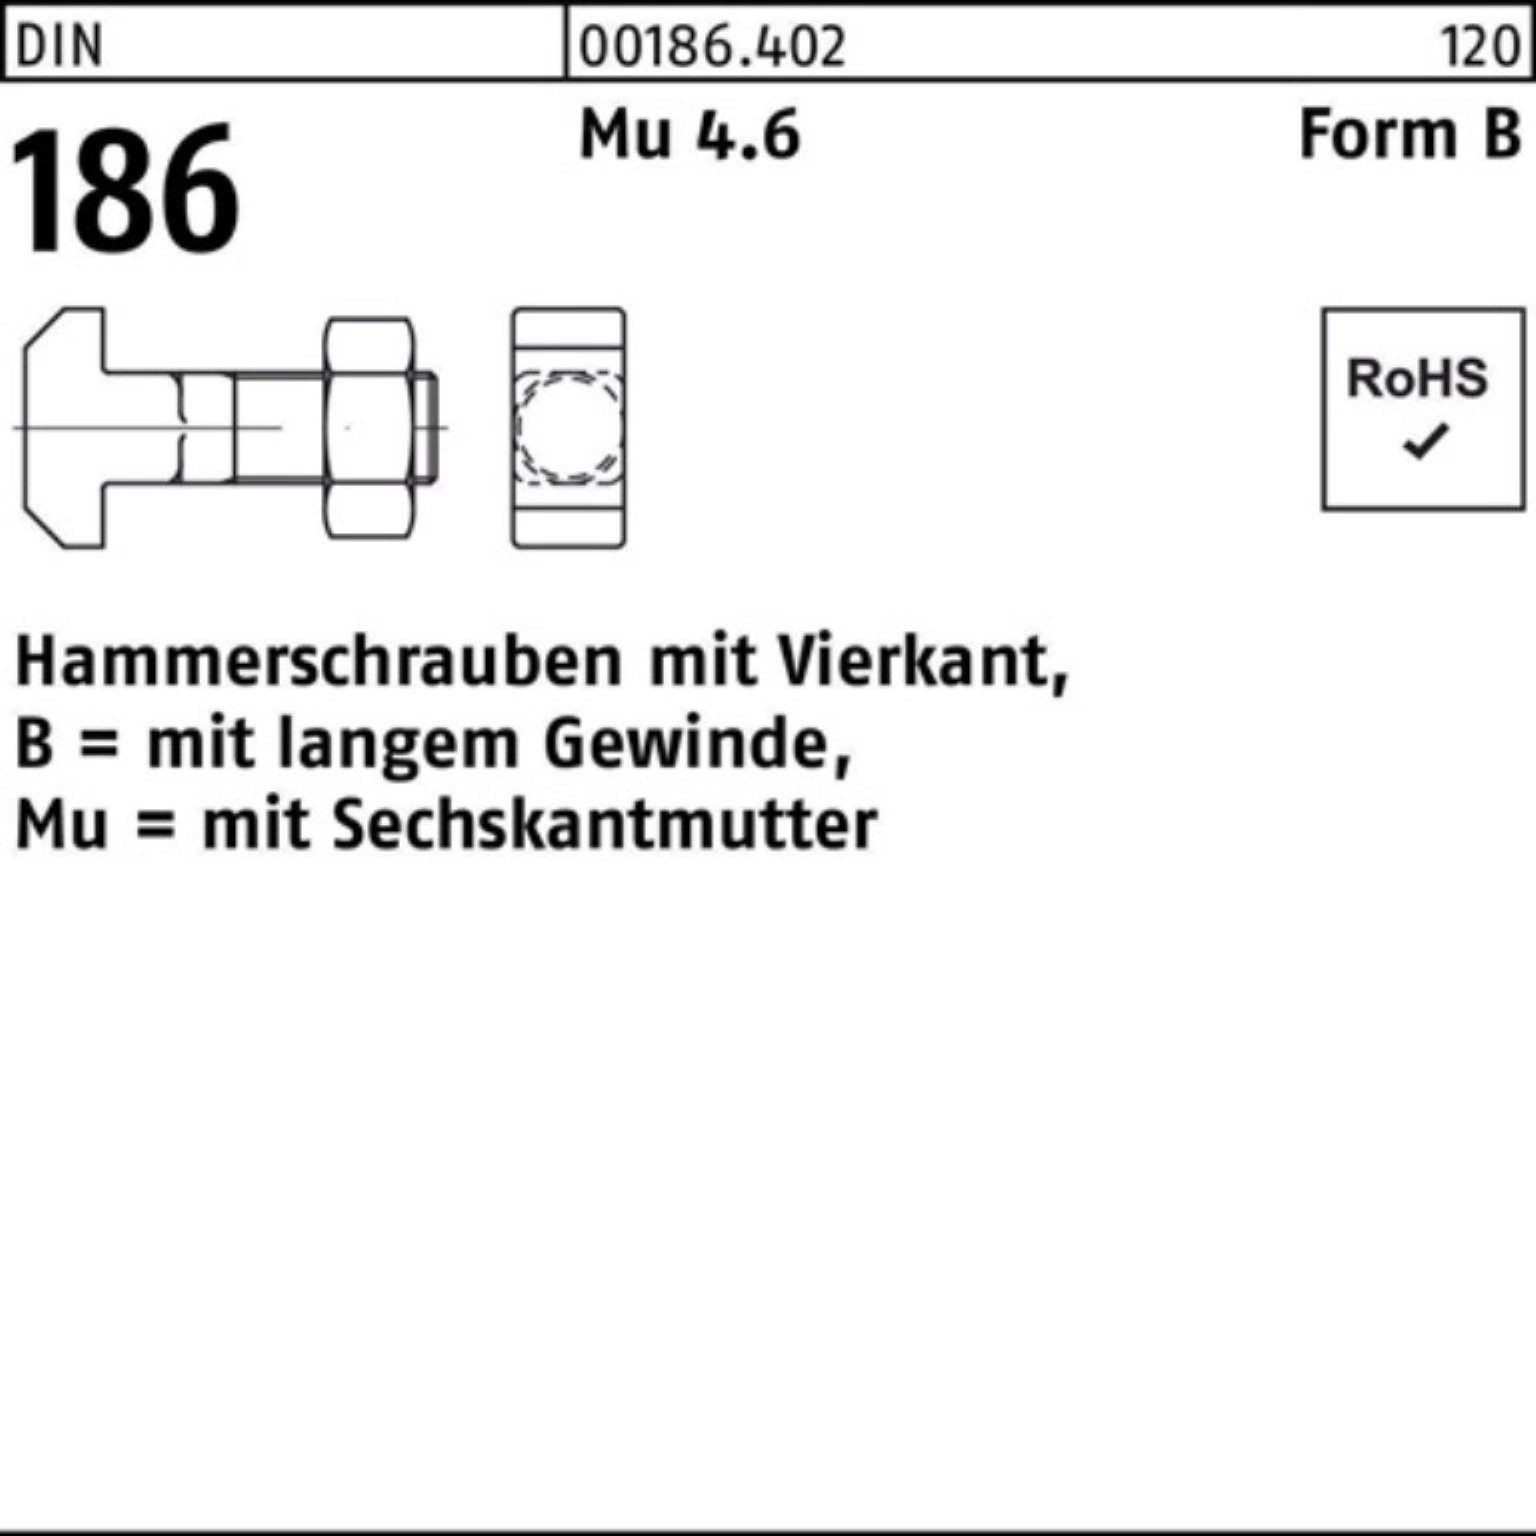 Vierkant 24x 100er Reyher Schraube 100 FormB Pack 6-ktmutter BM DIN 186 Hammerschraube